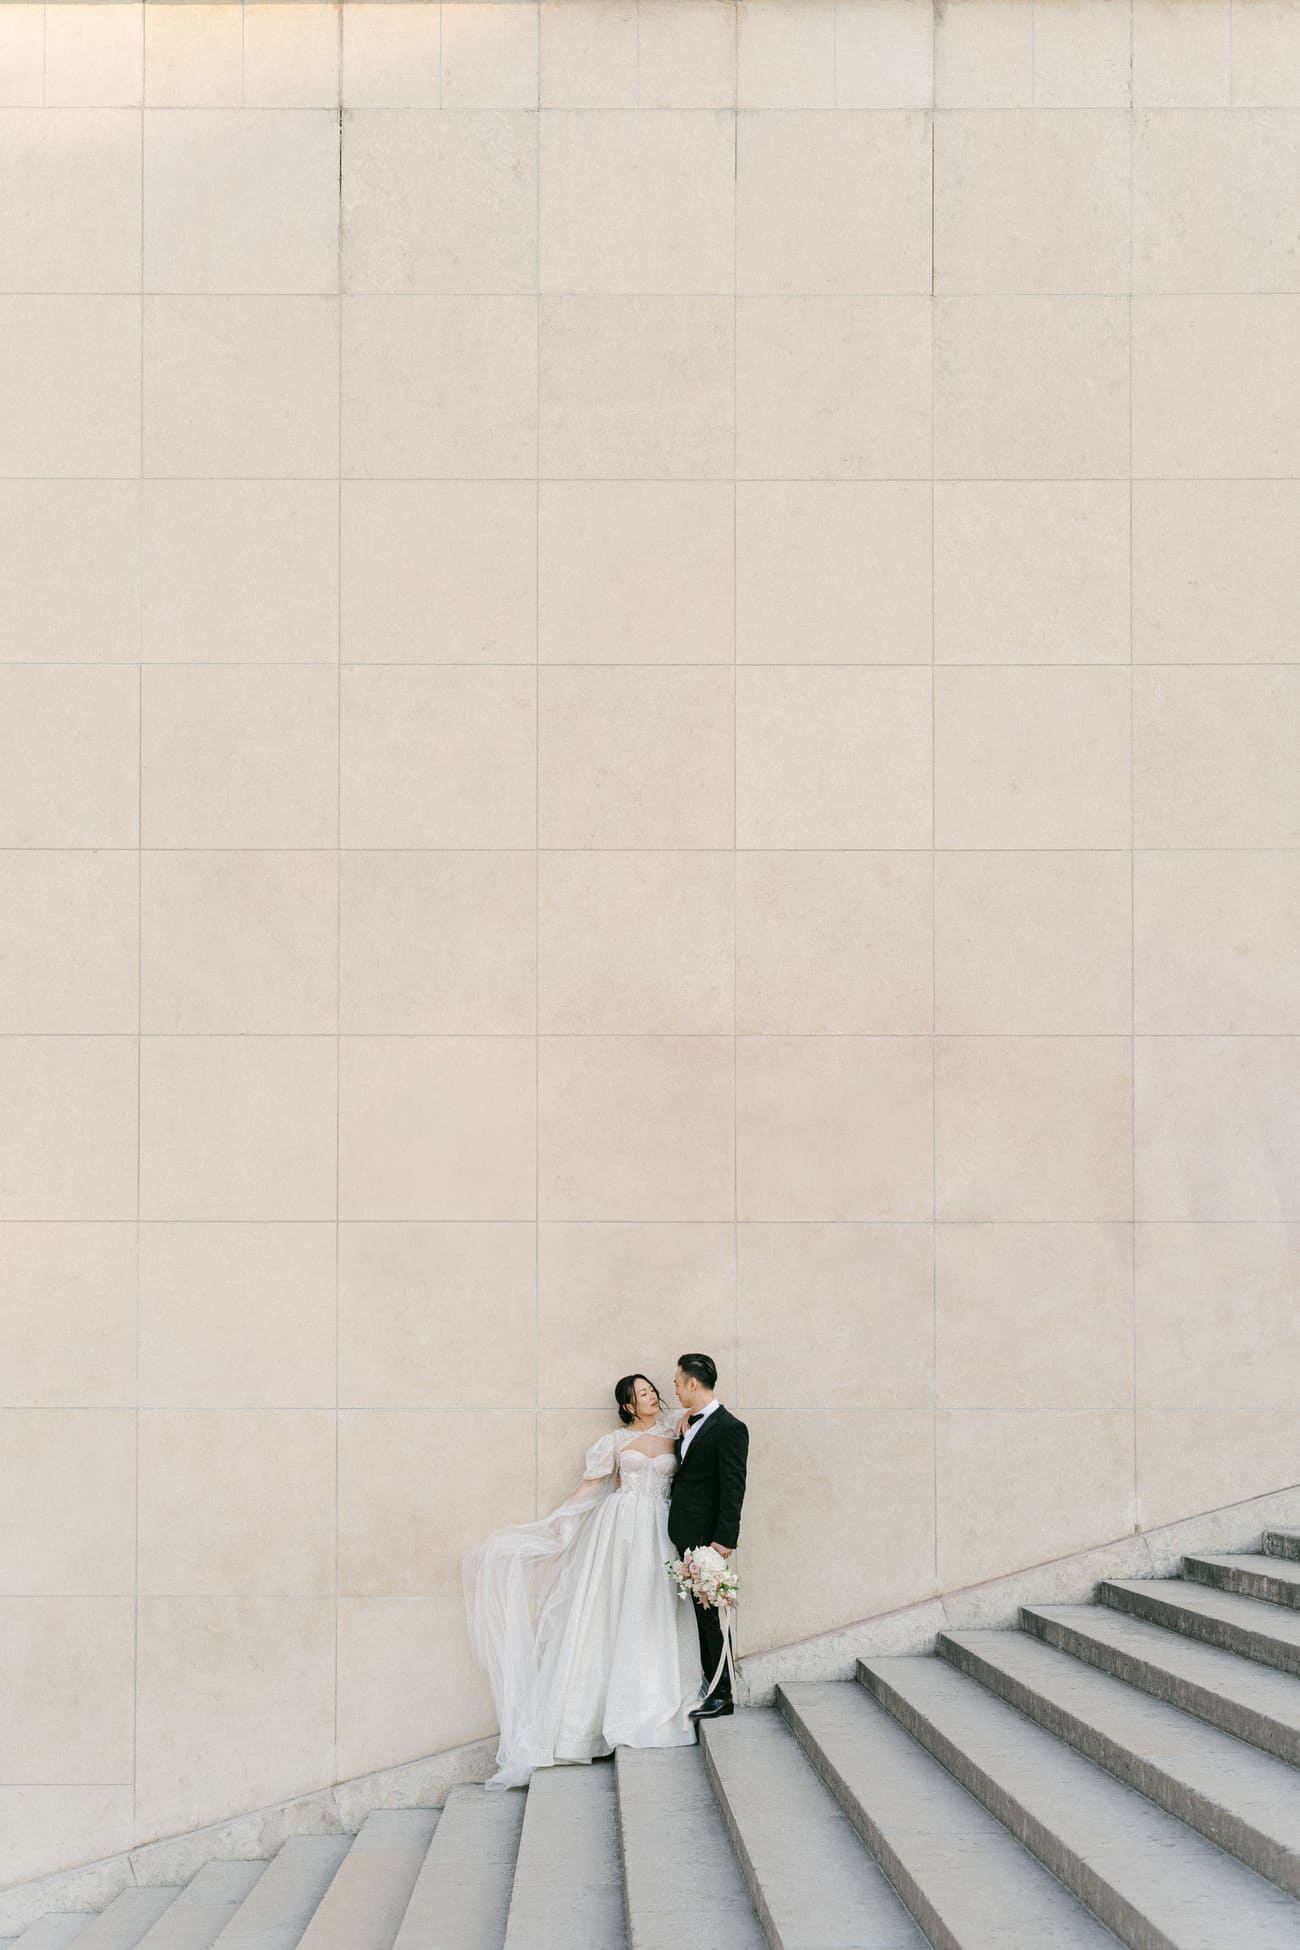 Ein Brautpaar teilt einen intimen Moment auf einer Treppe, eingebettet in die großflächige, nüchterne Architektur, die eine einzigartige Kulisse für ihre Hochzeitsfotos bietet.